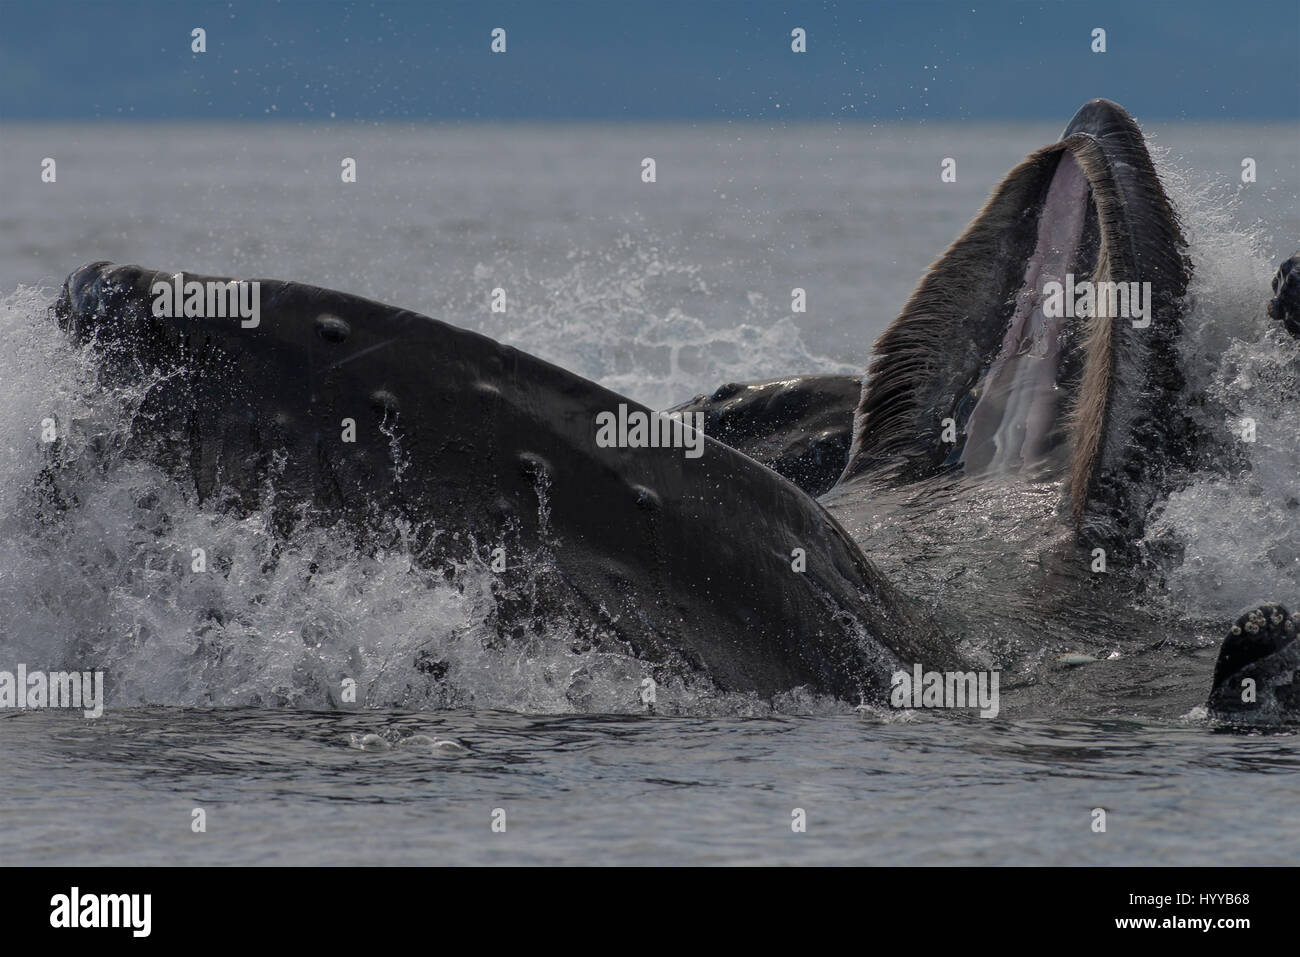 ALASKA, USA: balene Humpback bolla alimentazione rete. Spettacolari immagini di balene Humpback che appare simile a quella di una catena montuosa come essi bolla net mangimi sono stati catturati. L'incredibile serie di foto mostrano come i trenta-tonnellata balene immersione subacquea a cacciare la loro cena di aringa e poi riemergere rapidamente a ingoiare le loro catture prima che il pesce si può fare una fuga. In un altro colpo, una barca di pescatori guardare lo spettacolo. Un'altra immagine mostra un humpback la scomparsa del tubo di lancio in alto le nuvole. Questo straordinario incontro fu catturato da artista americano e fotografo, Scott Methvin (58) in sud Foto Stock